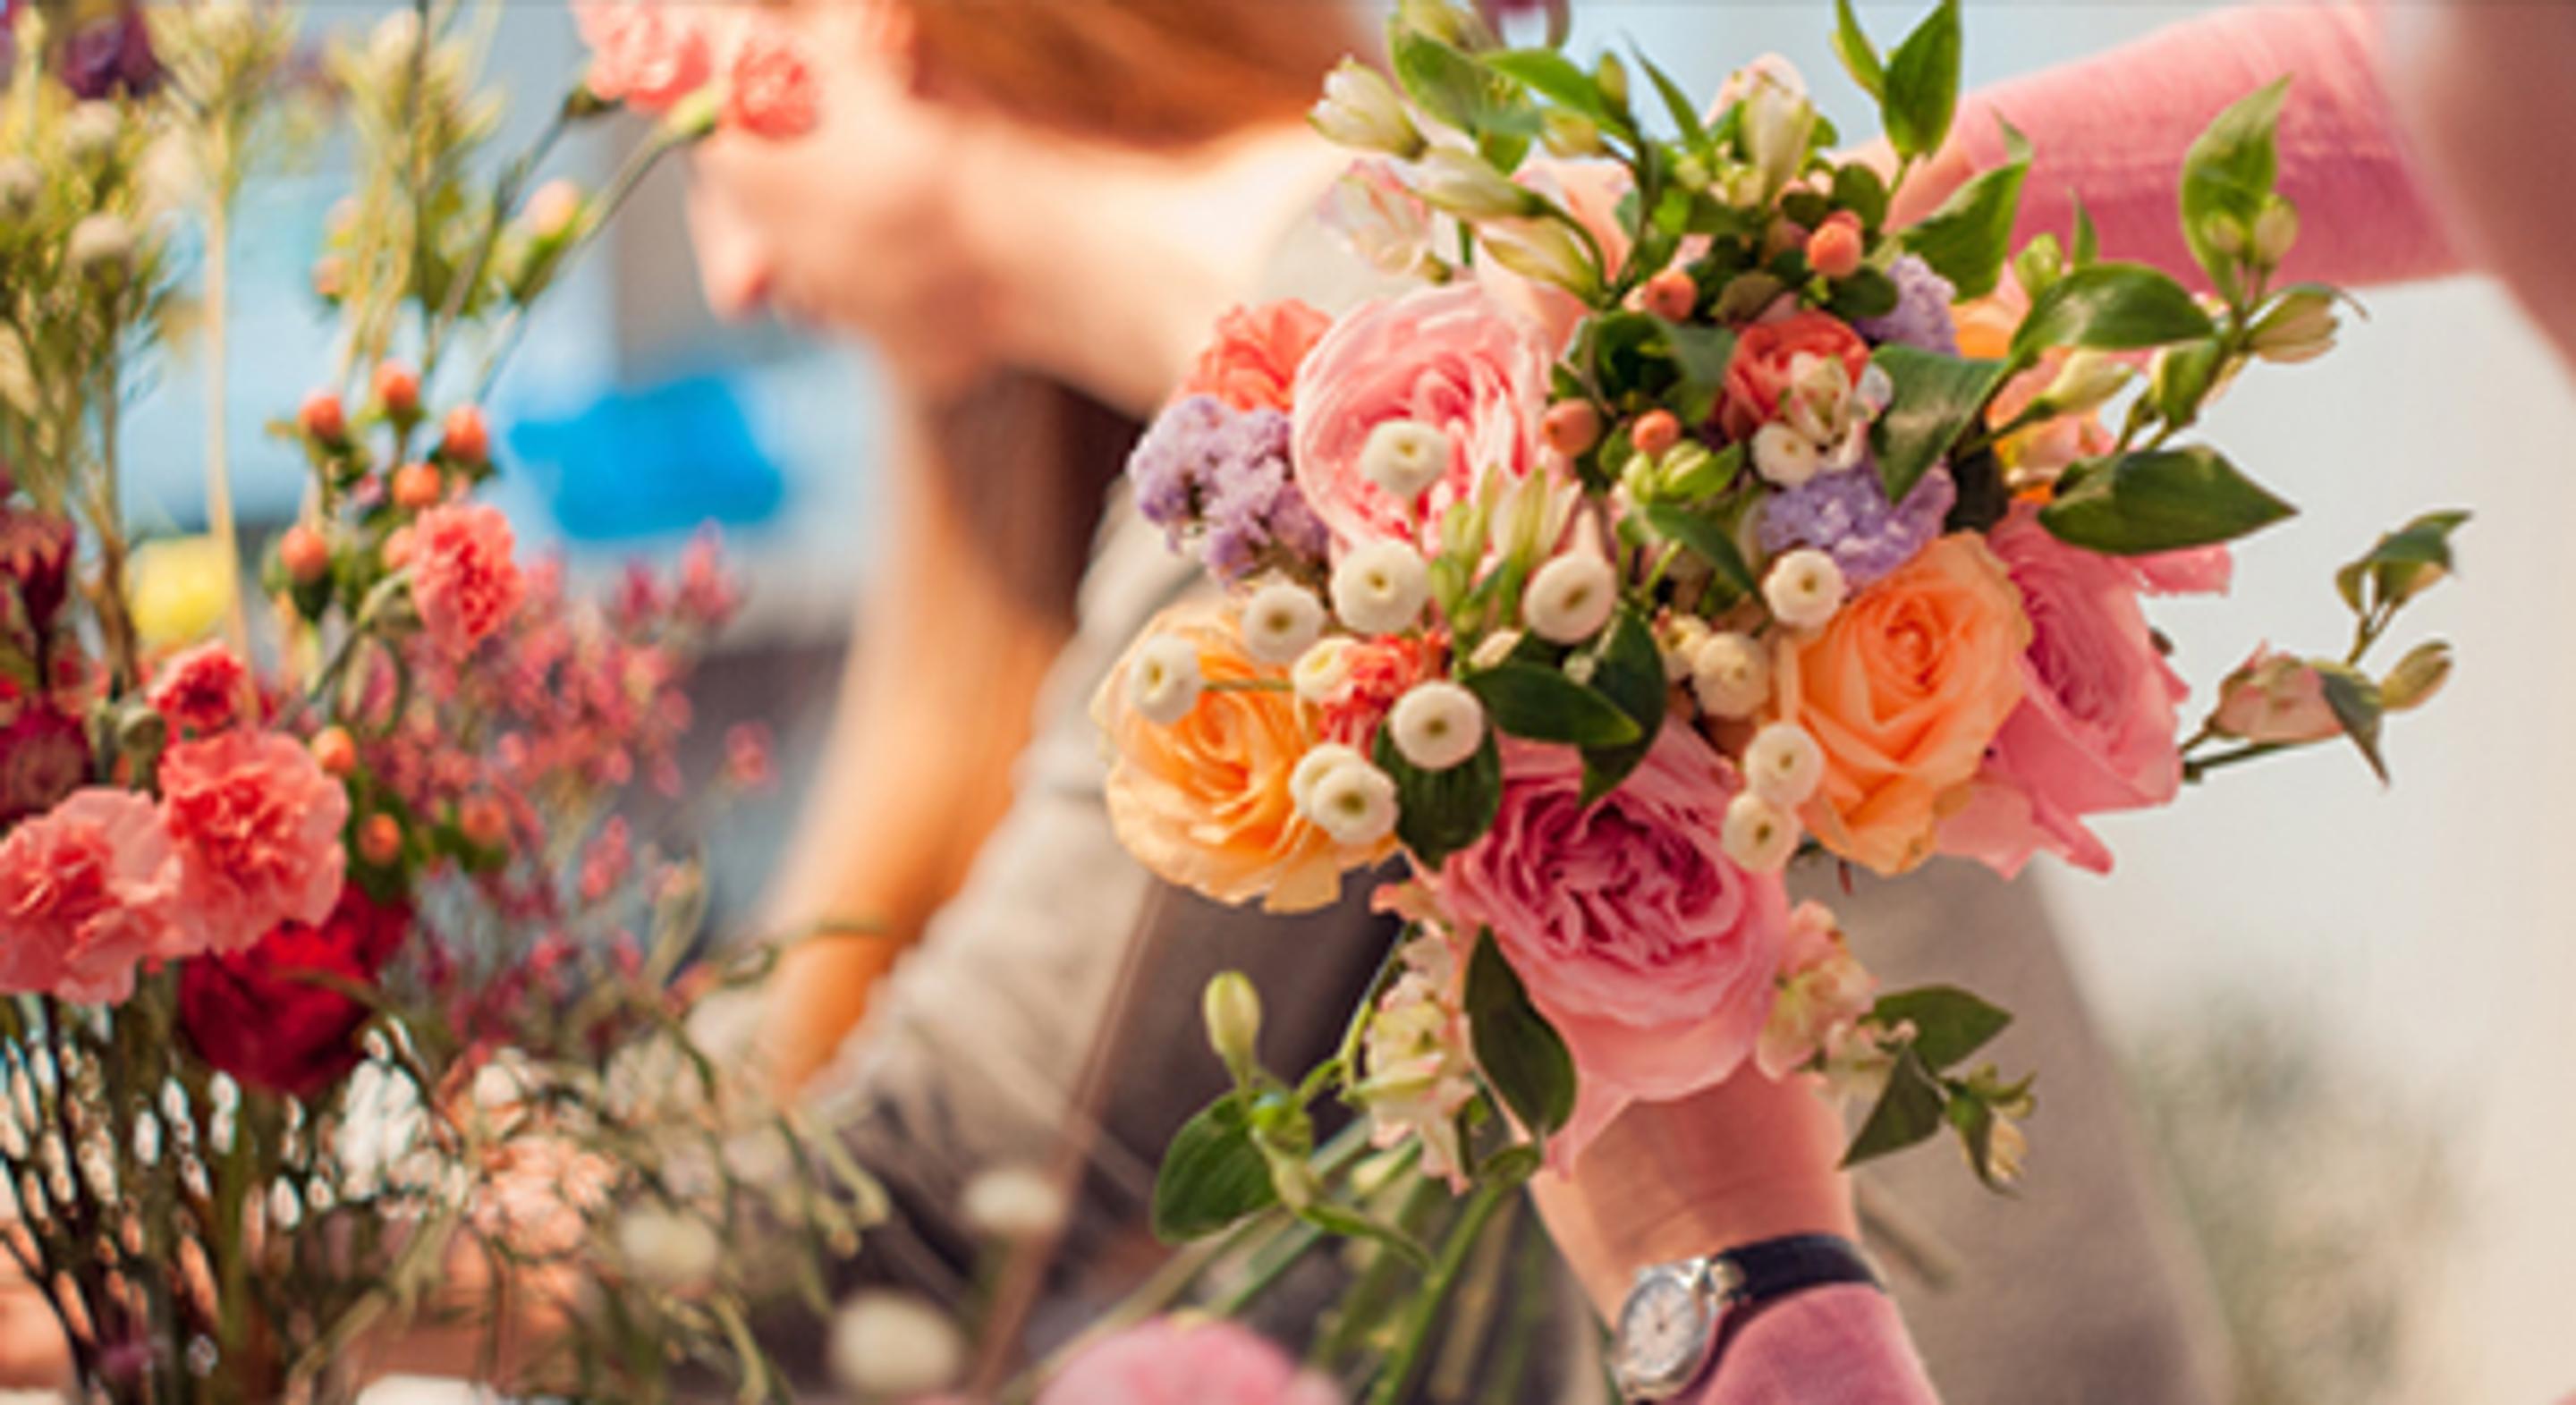 Florist arranging a bright colored floral bouquet